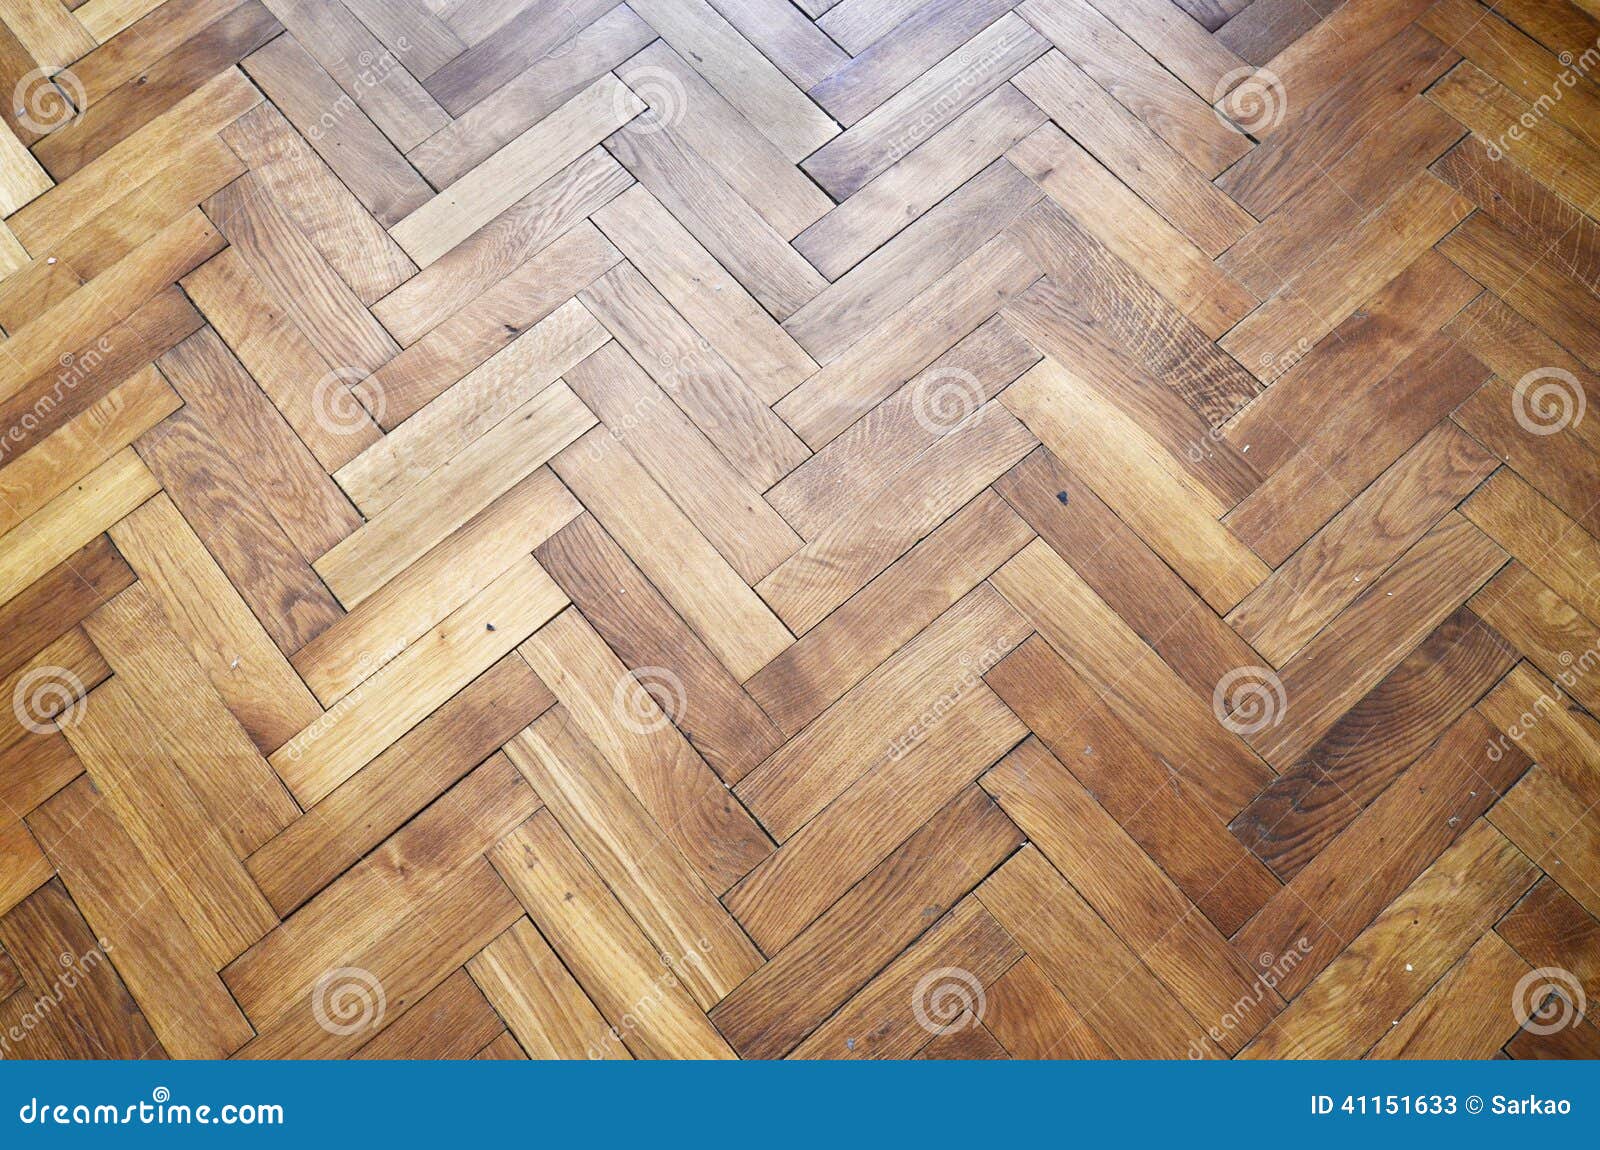 parquetry floor